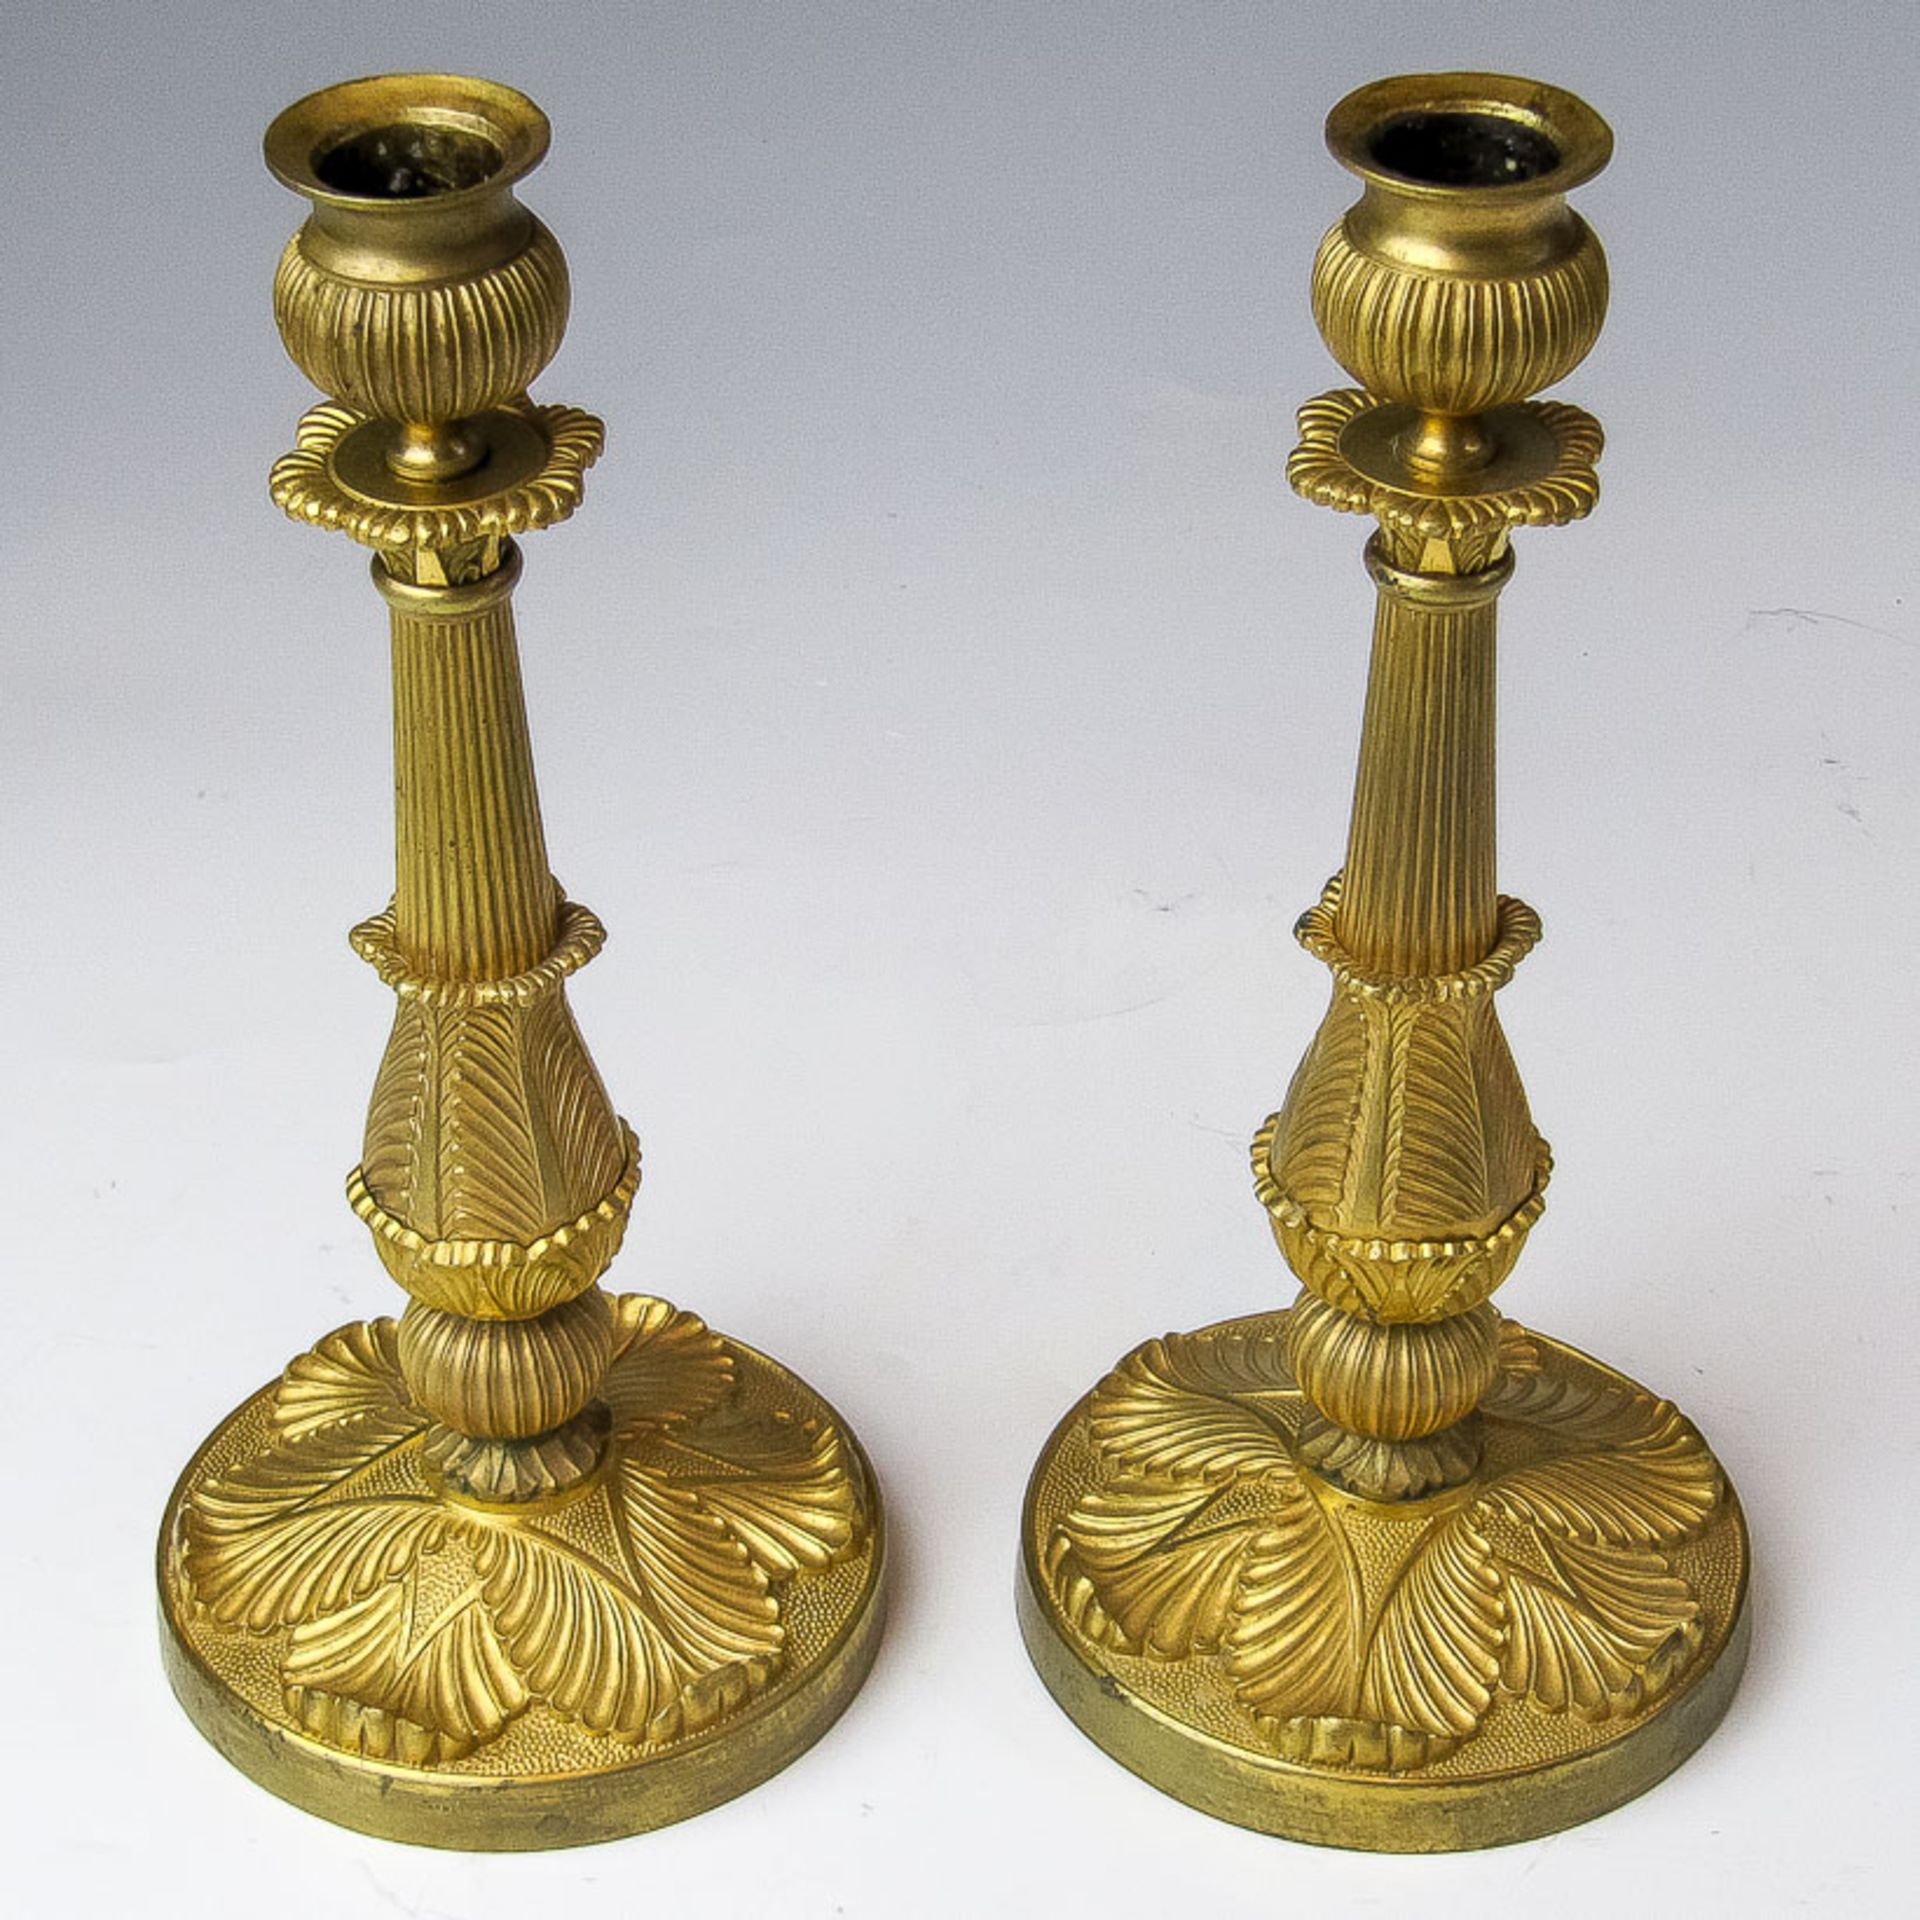 Ein Paar Leuchter im Empire-Stil19. Jh.Messing, vergoldet. Runder Fuß mit reliefiert